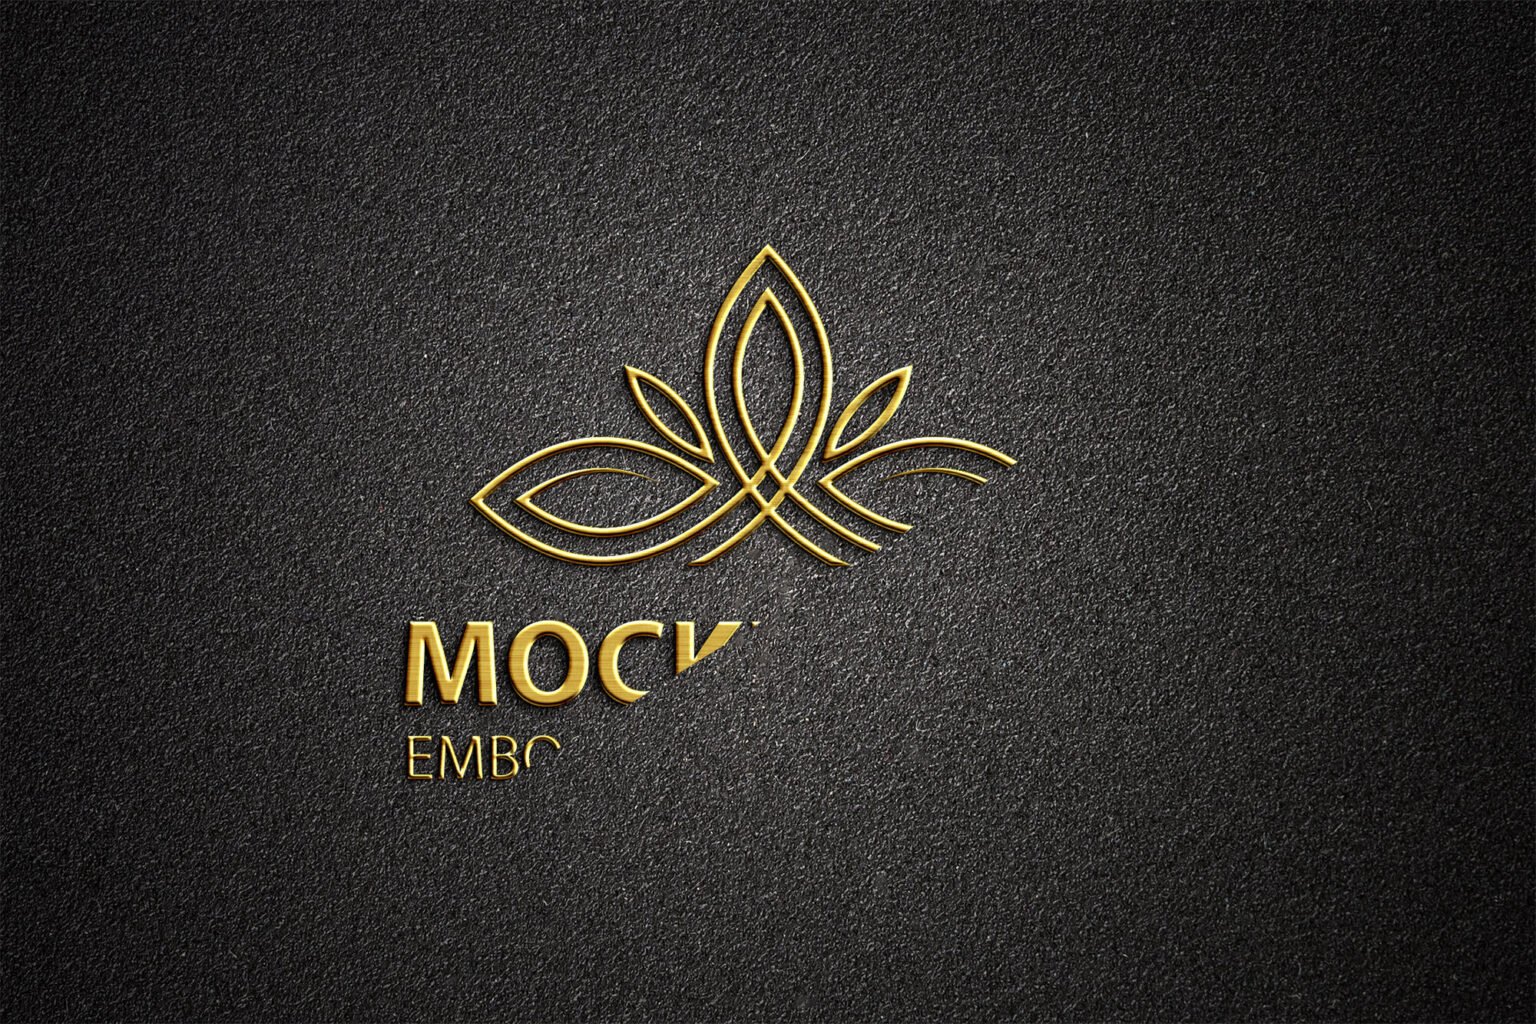 Download Embossed Logo Mockup Free PSD Template - Mockup Den